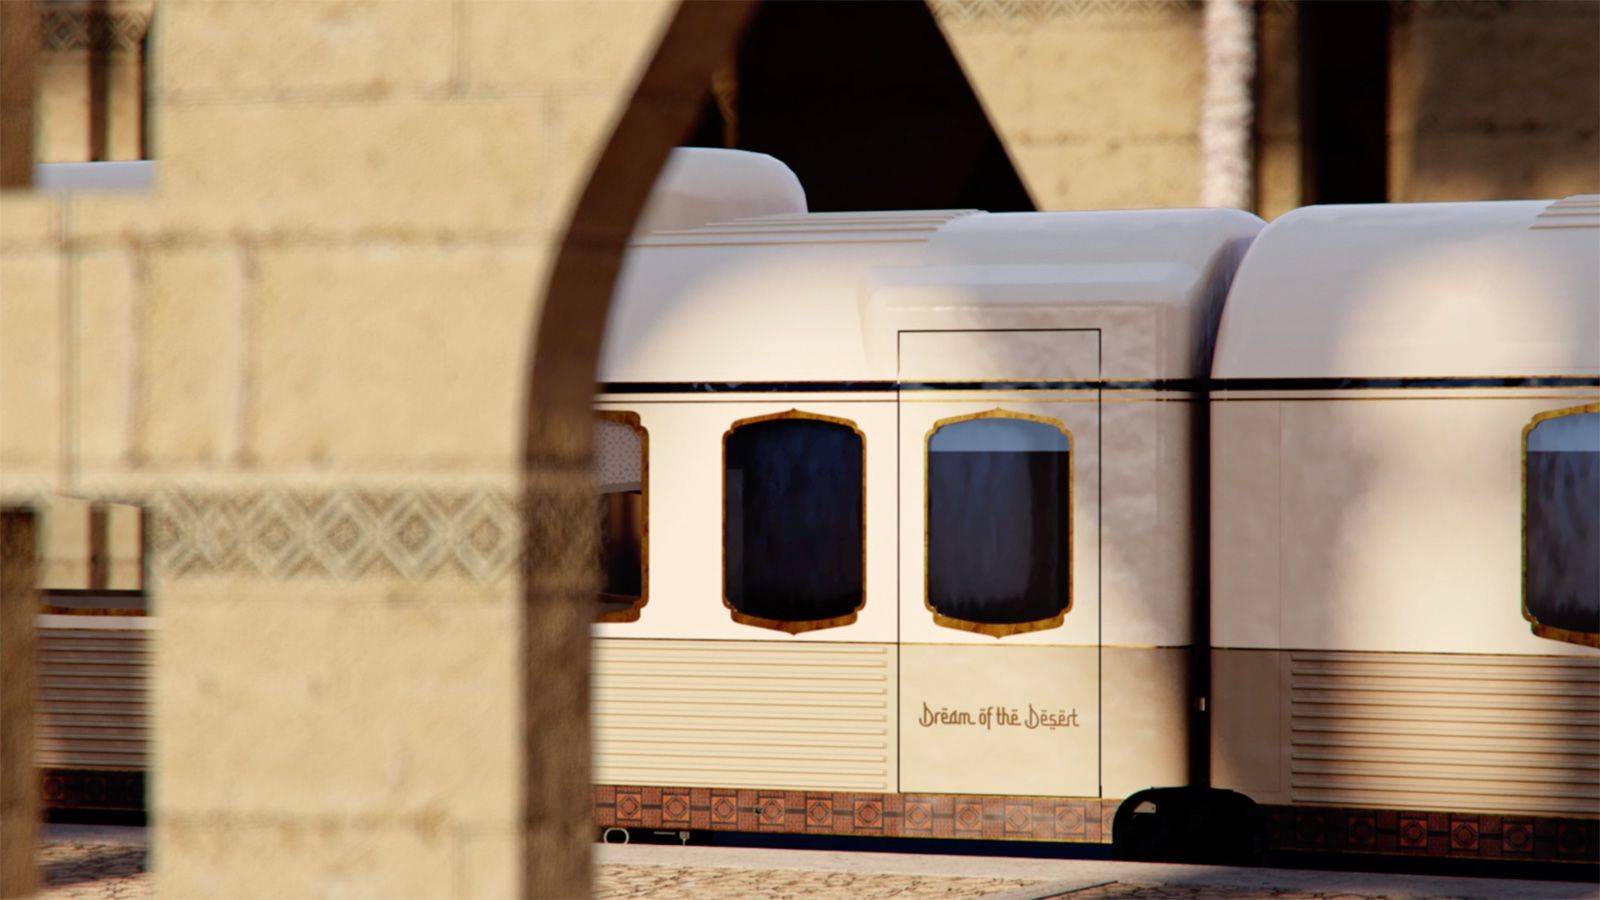 حلم الصحراء هو أحدث مشاريع القطارات في السعودية